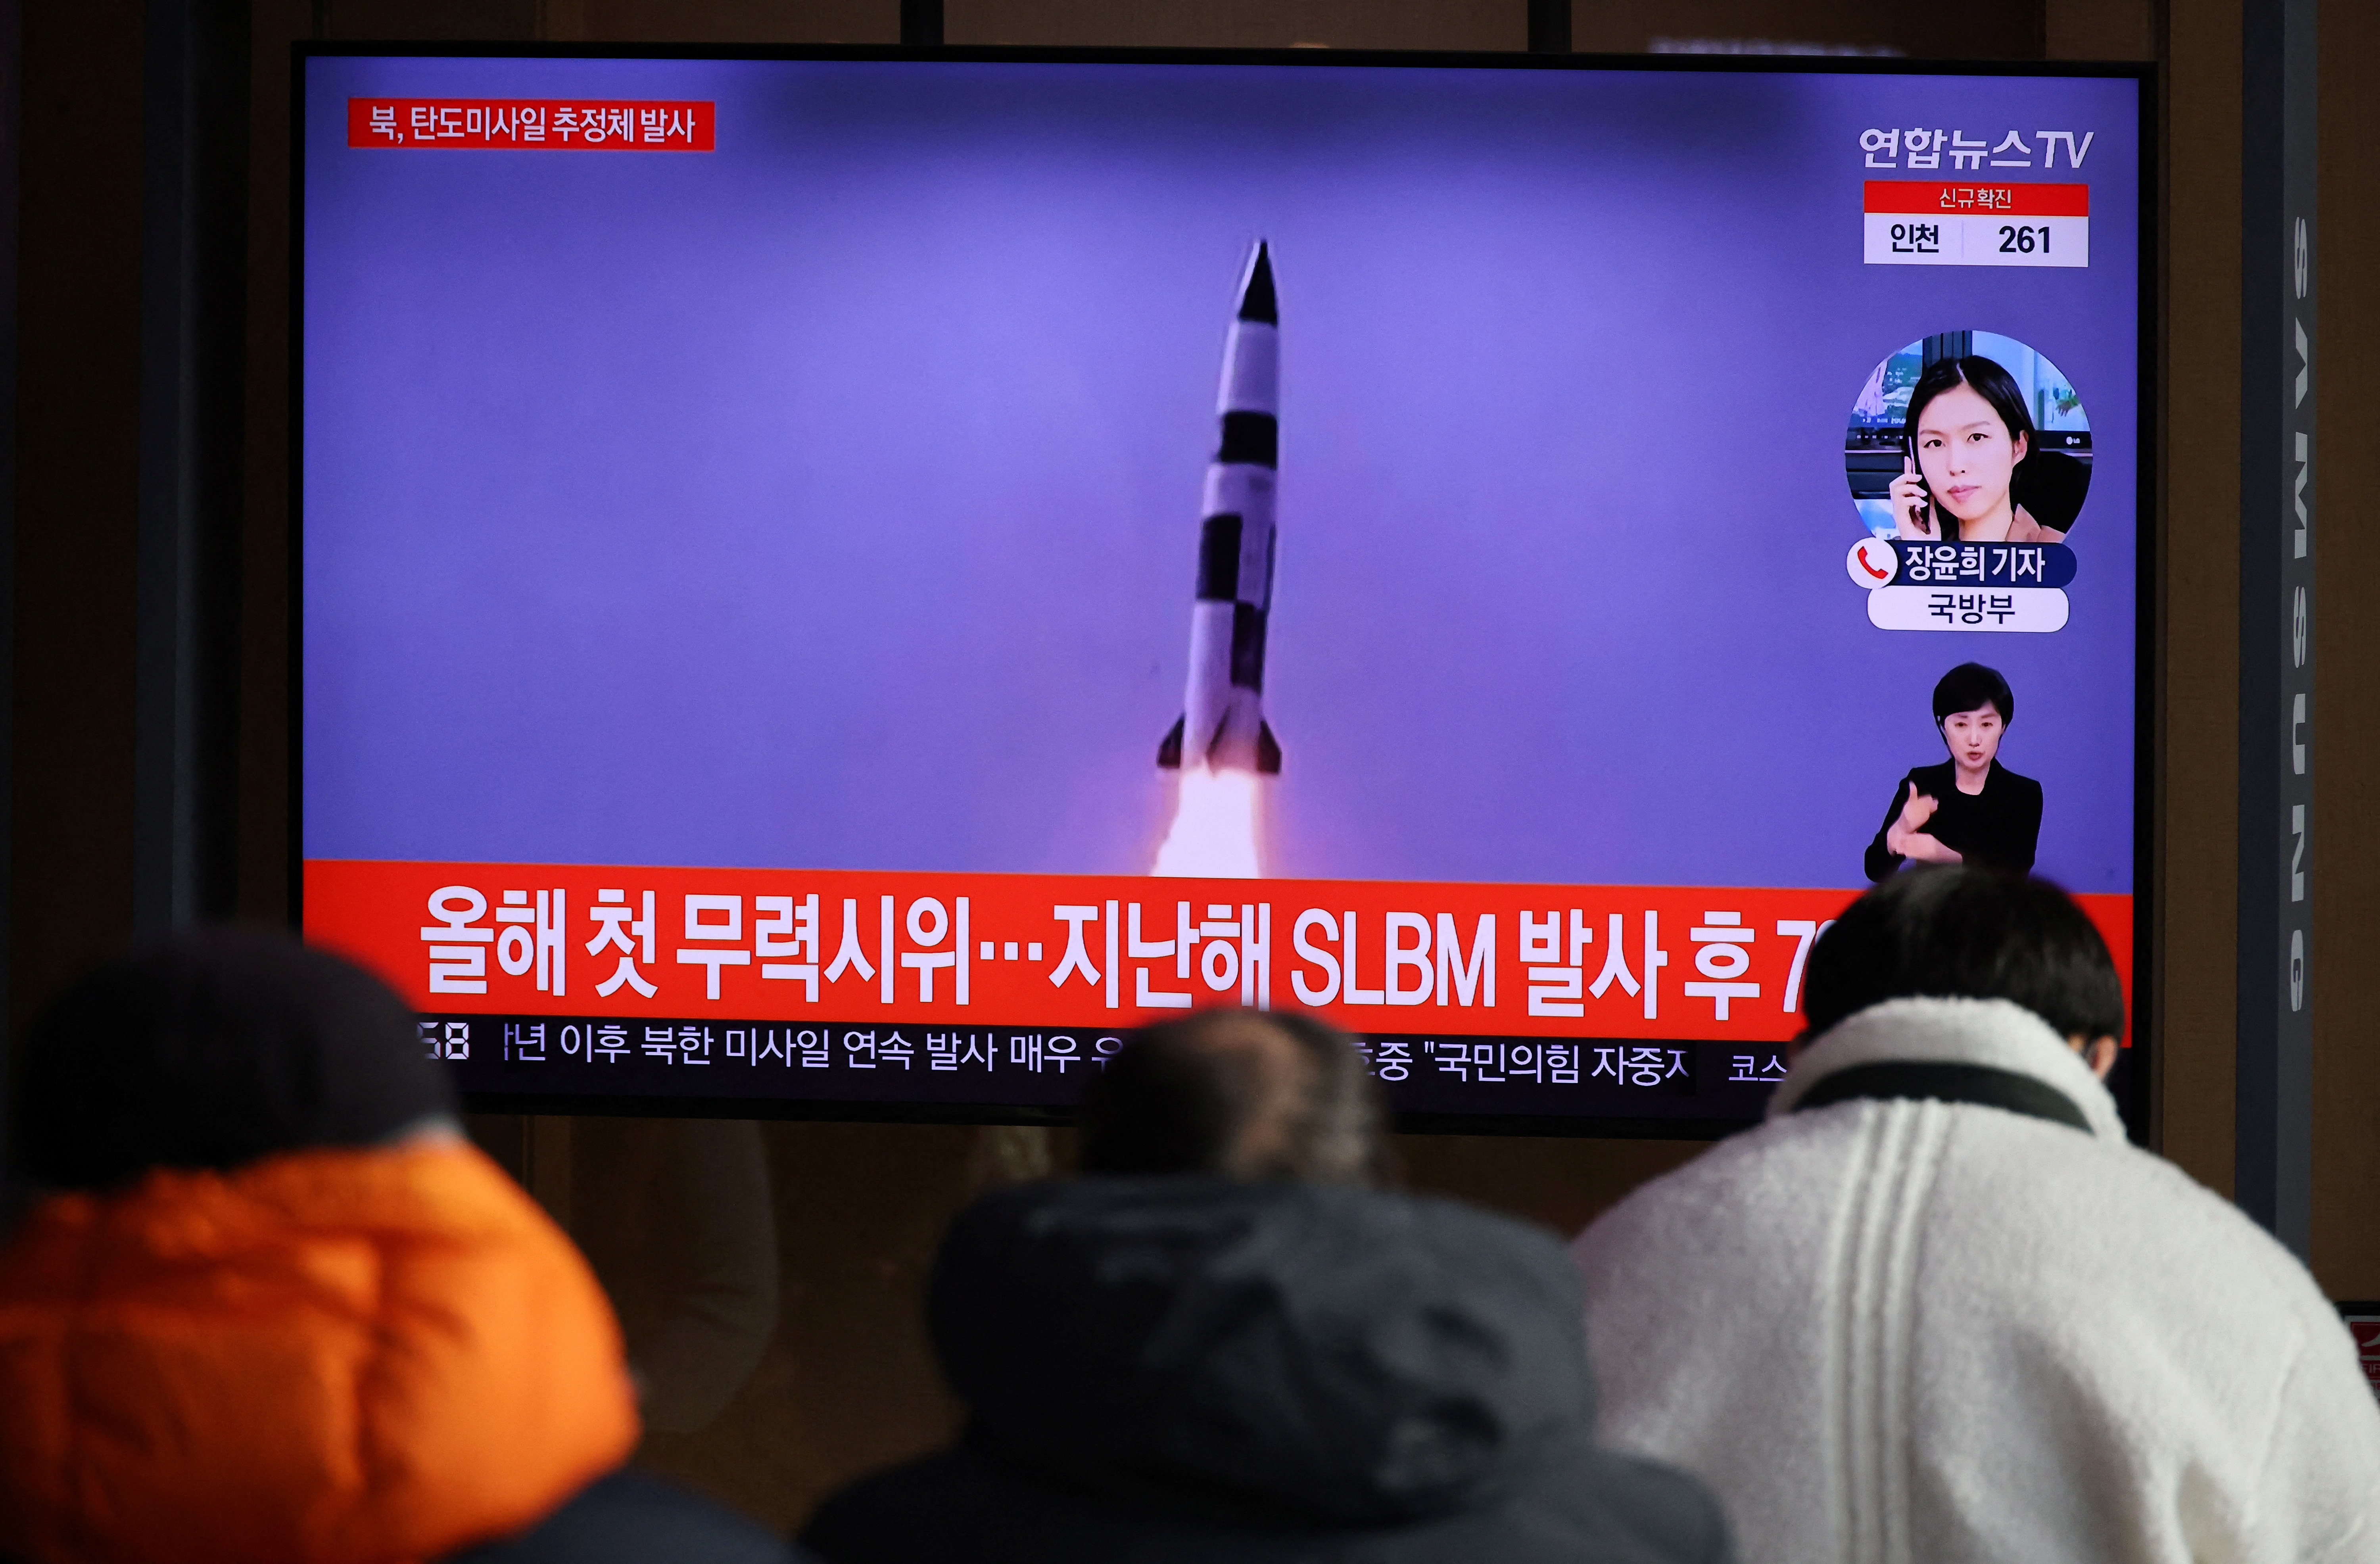 Personas observan un informe sobre el nuevo lanzamiento balistico norcoreano en Seúl (REUTERS/Kim Hong-Ji)